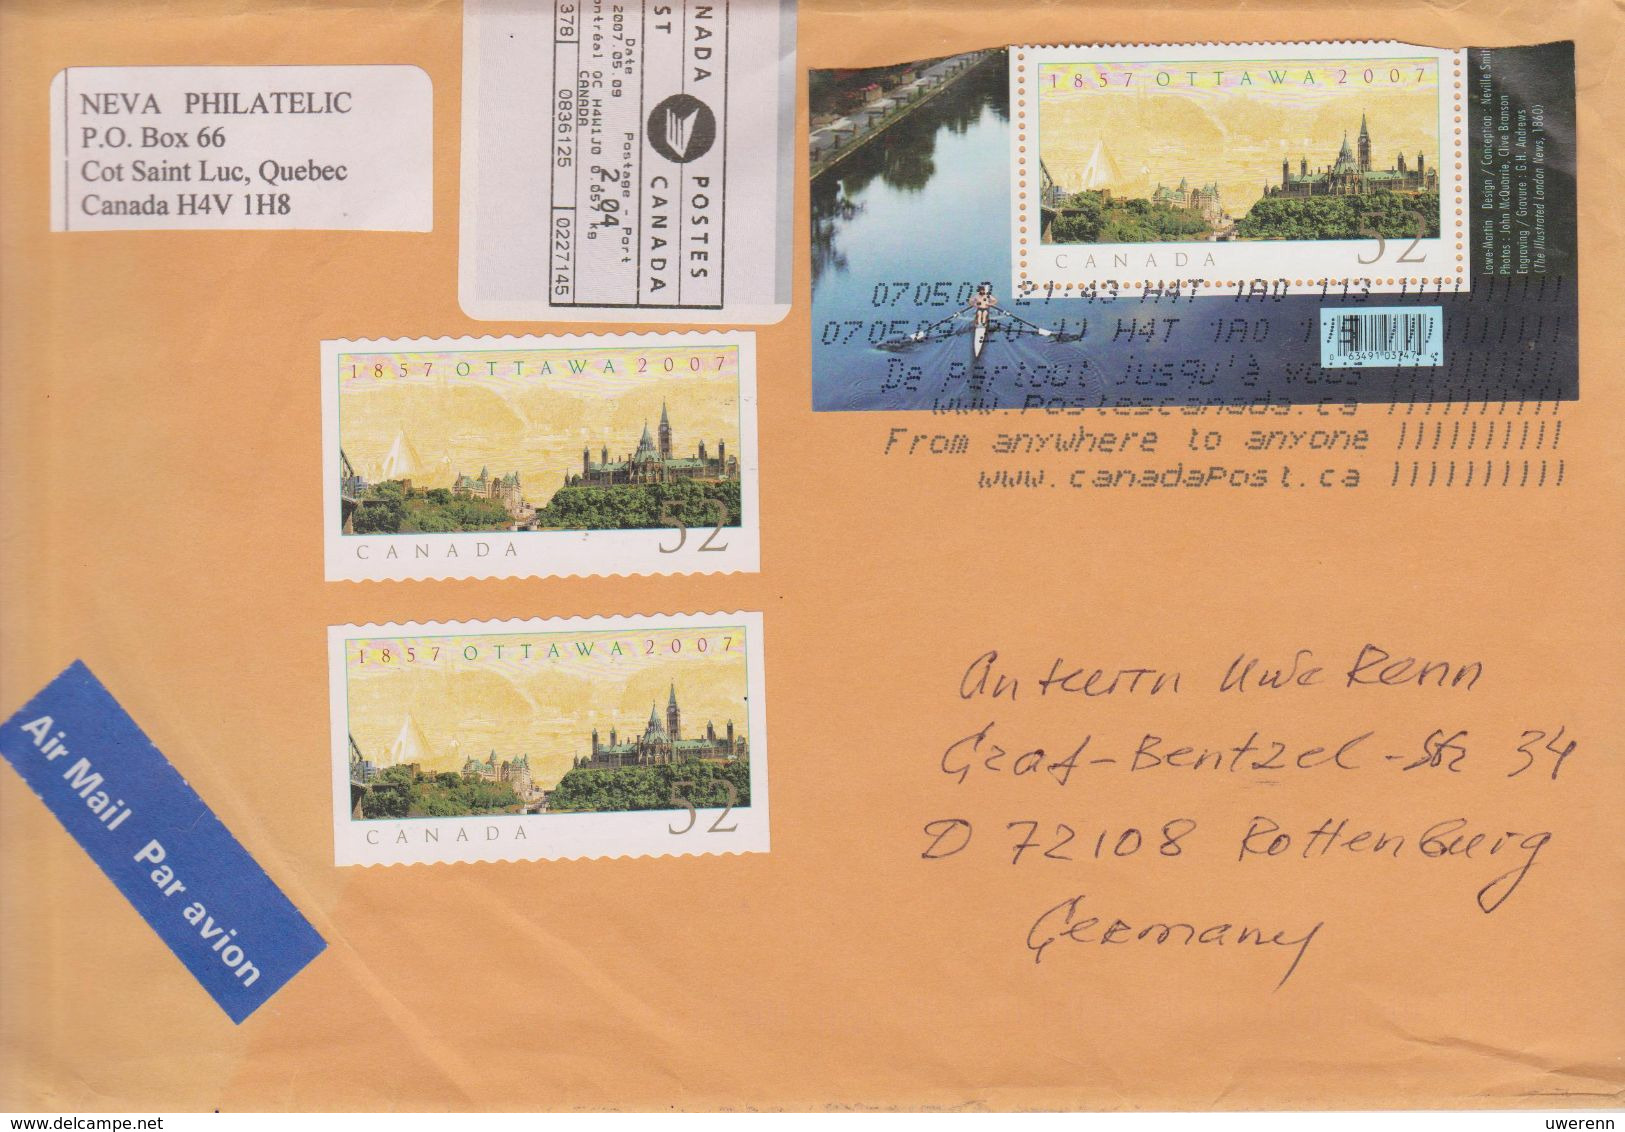 Kanada 2009. Brief Aus Cote-Saint-Luc, Quebec Nach Deutschland, Stempel Posteigenwerbung "From Anywhere ..." - Postgeschiedenis